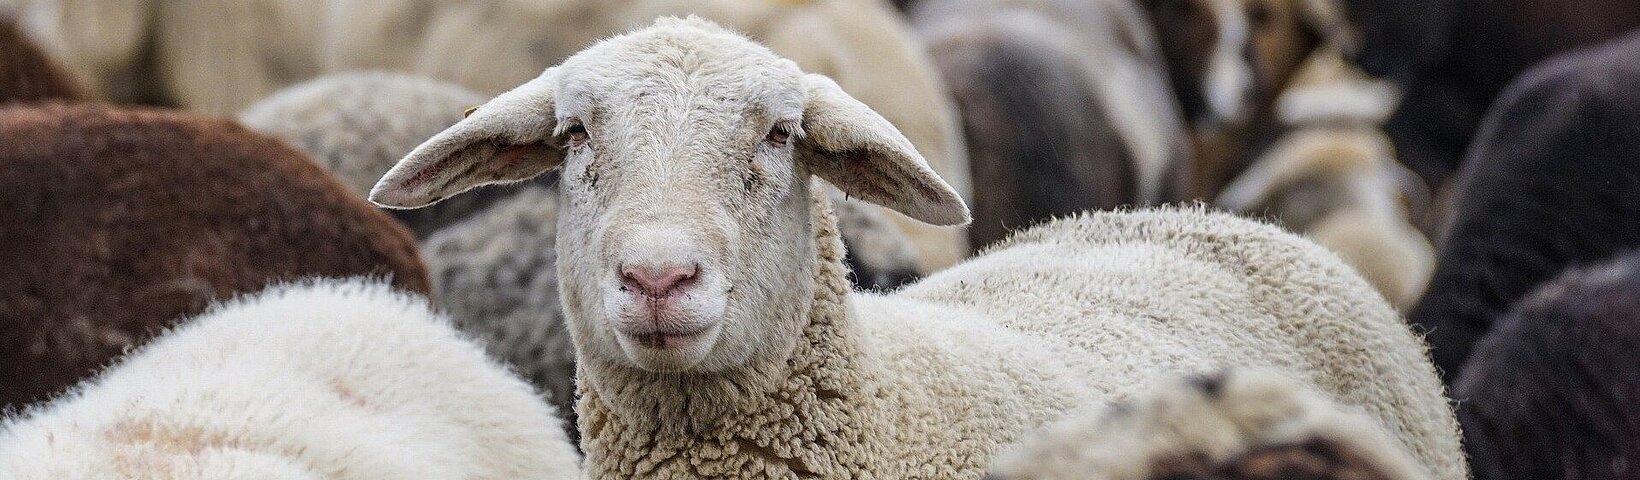 Ein aufschauendes Schaf in einer Schafgruppe 